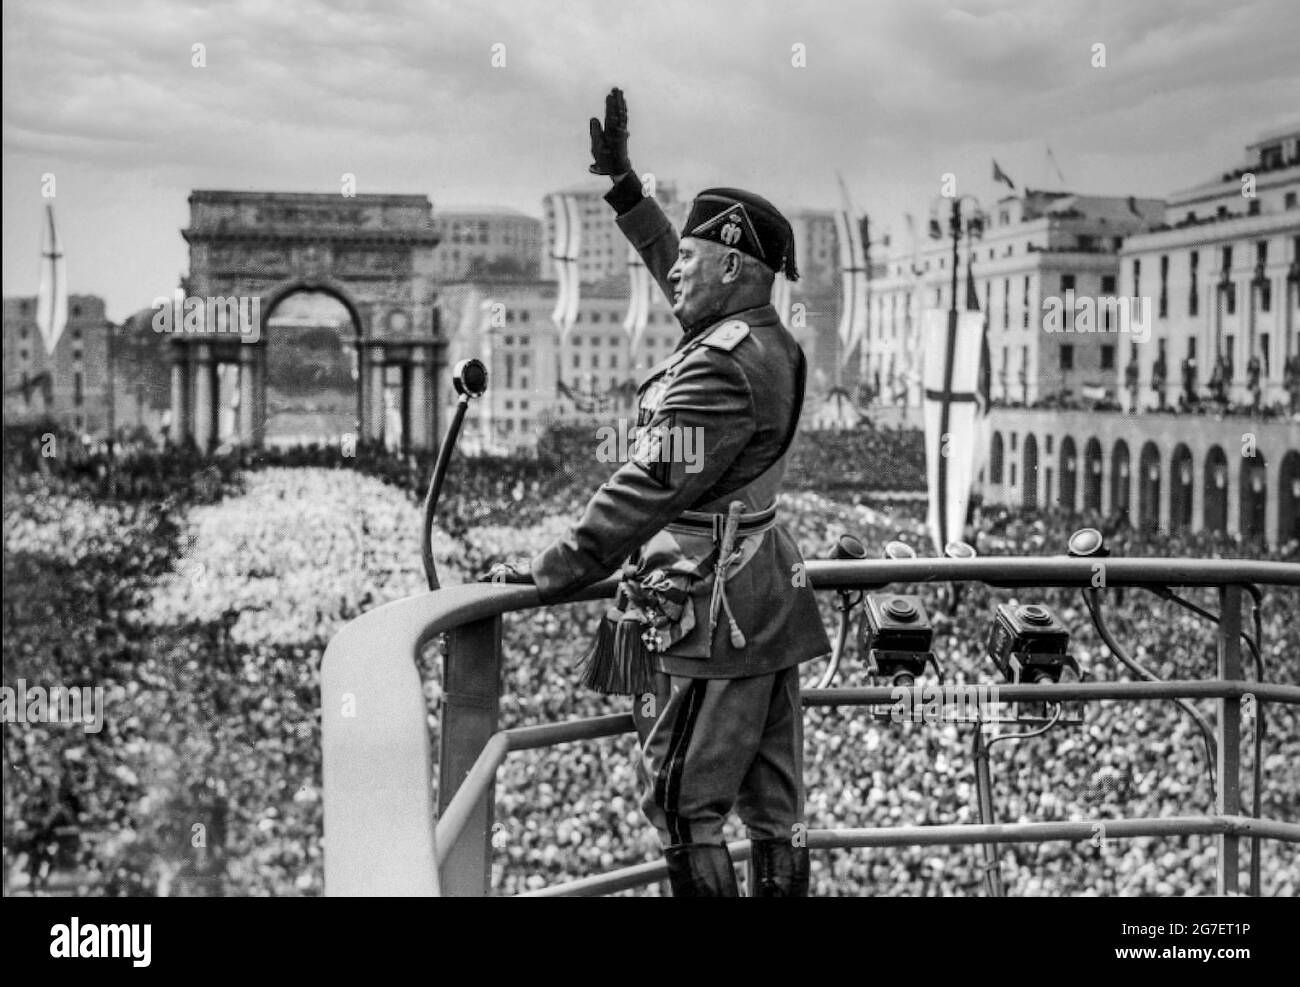 DISCOURS DE MUSSOLINI 1930s il DULCE ROME ITALIE DISCOURS le dictateur fasciste italien Benito Mussolini au plus haut de sa popularité, en uniforme militaire avec microphone faire un discours sur le podium, saluant le faciste aux foules italiennes égustates à Rome Italie en 1930s. Banque D'Images